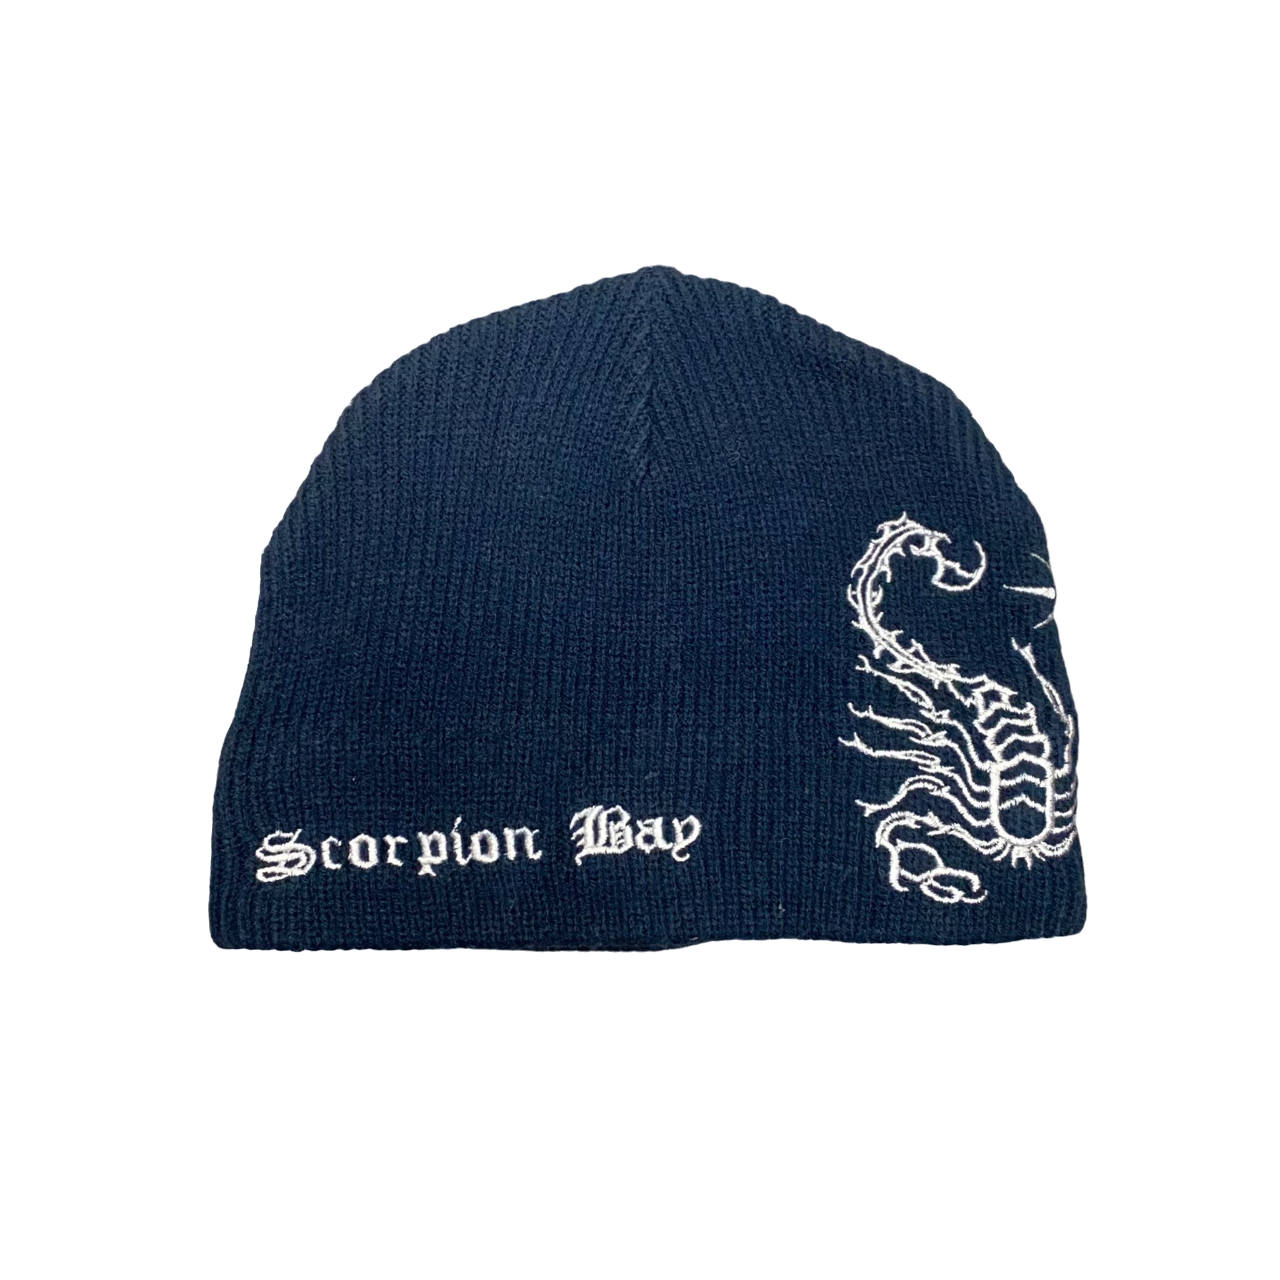 Scorpion Bay berretto Beanie con logo per bambino AMC005 13 blu